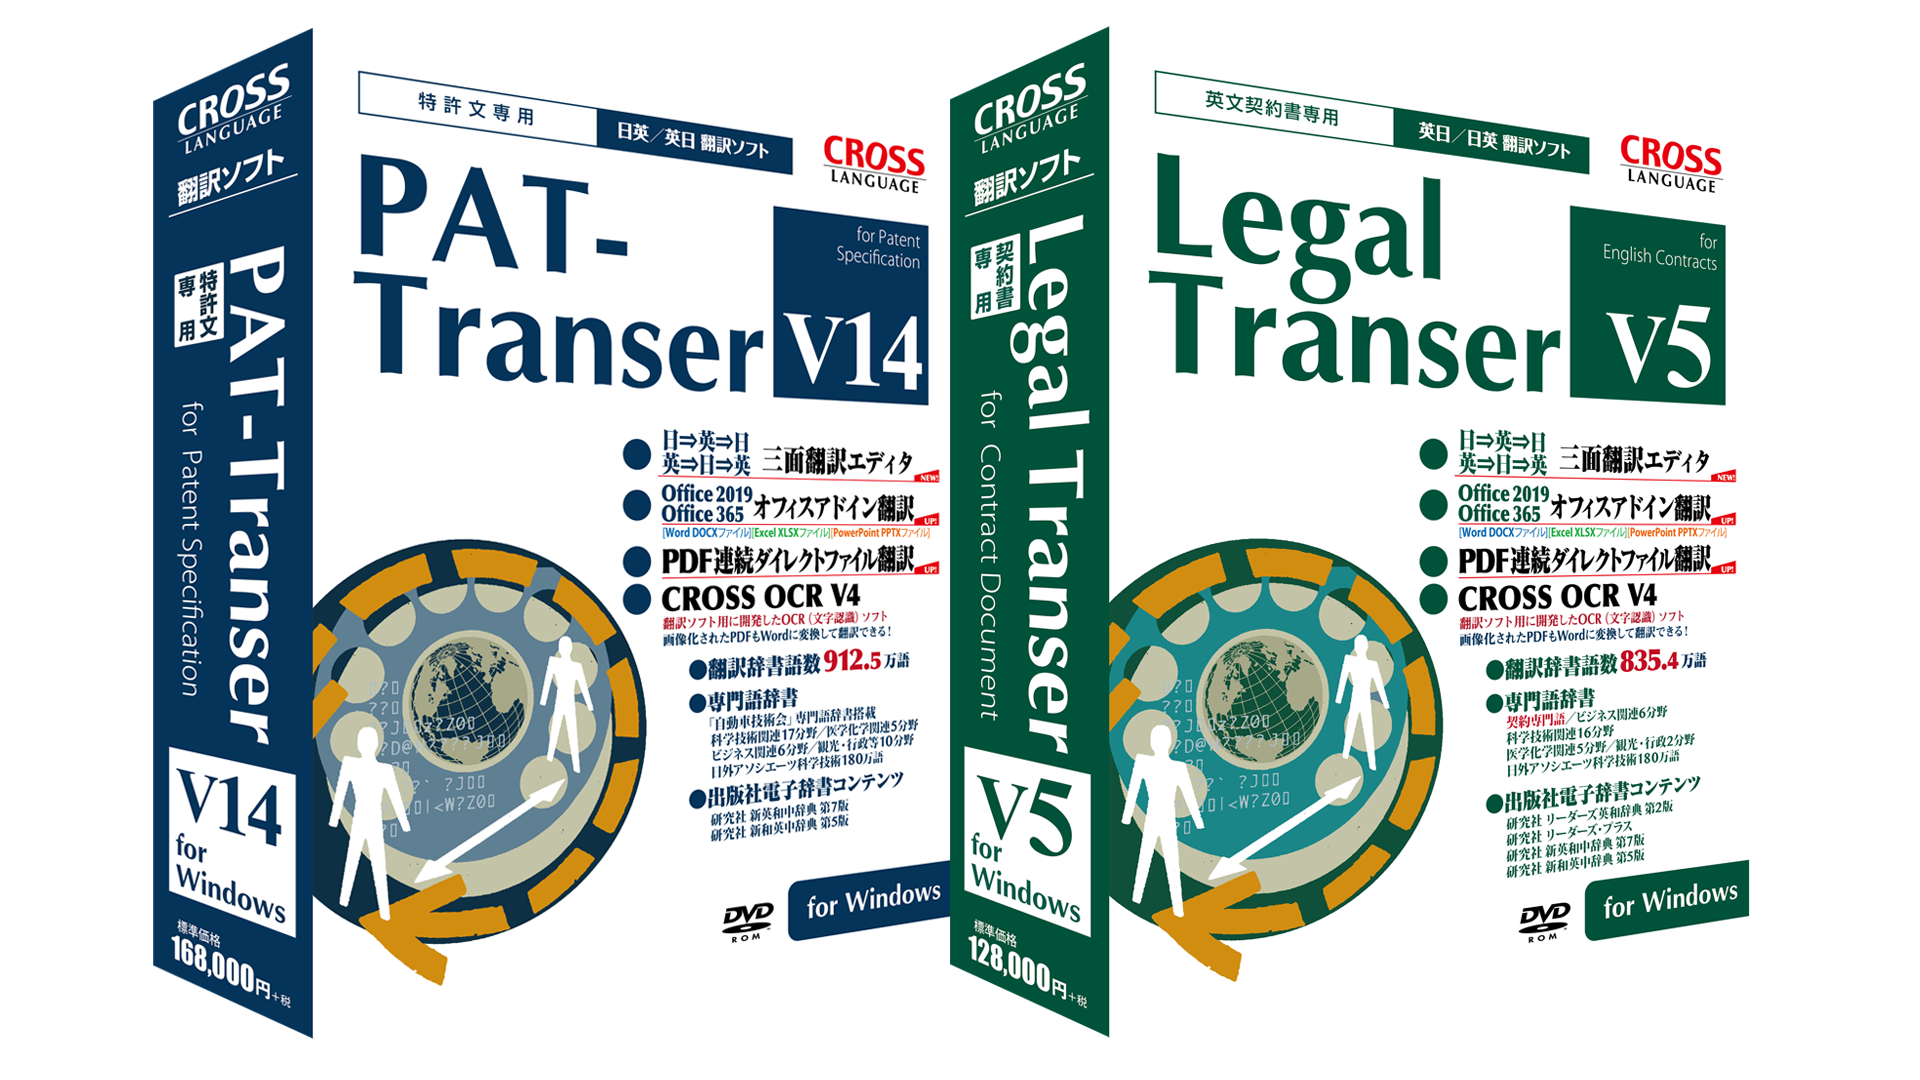 PAT-Transer V14 for Windows / Legal-Transer V5 for Windows 